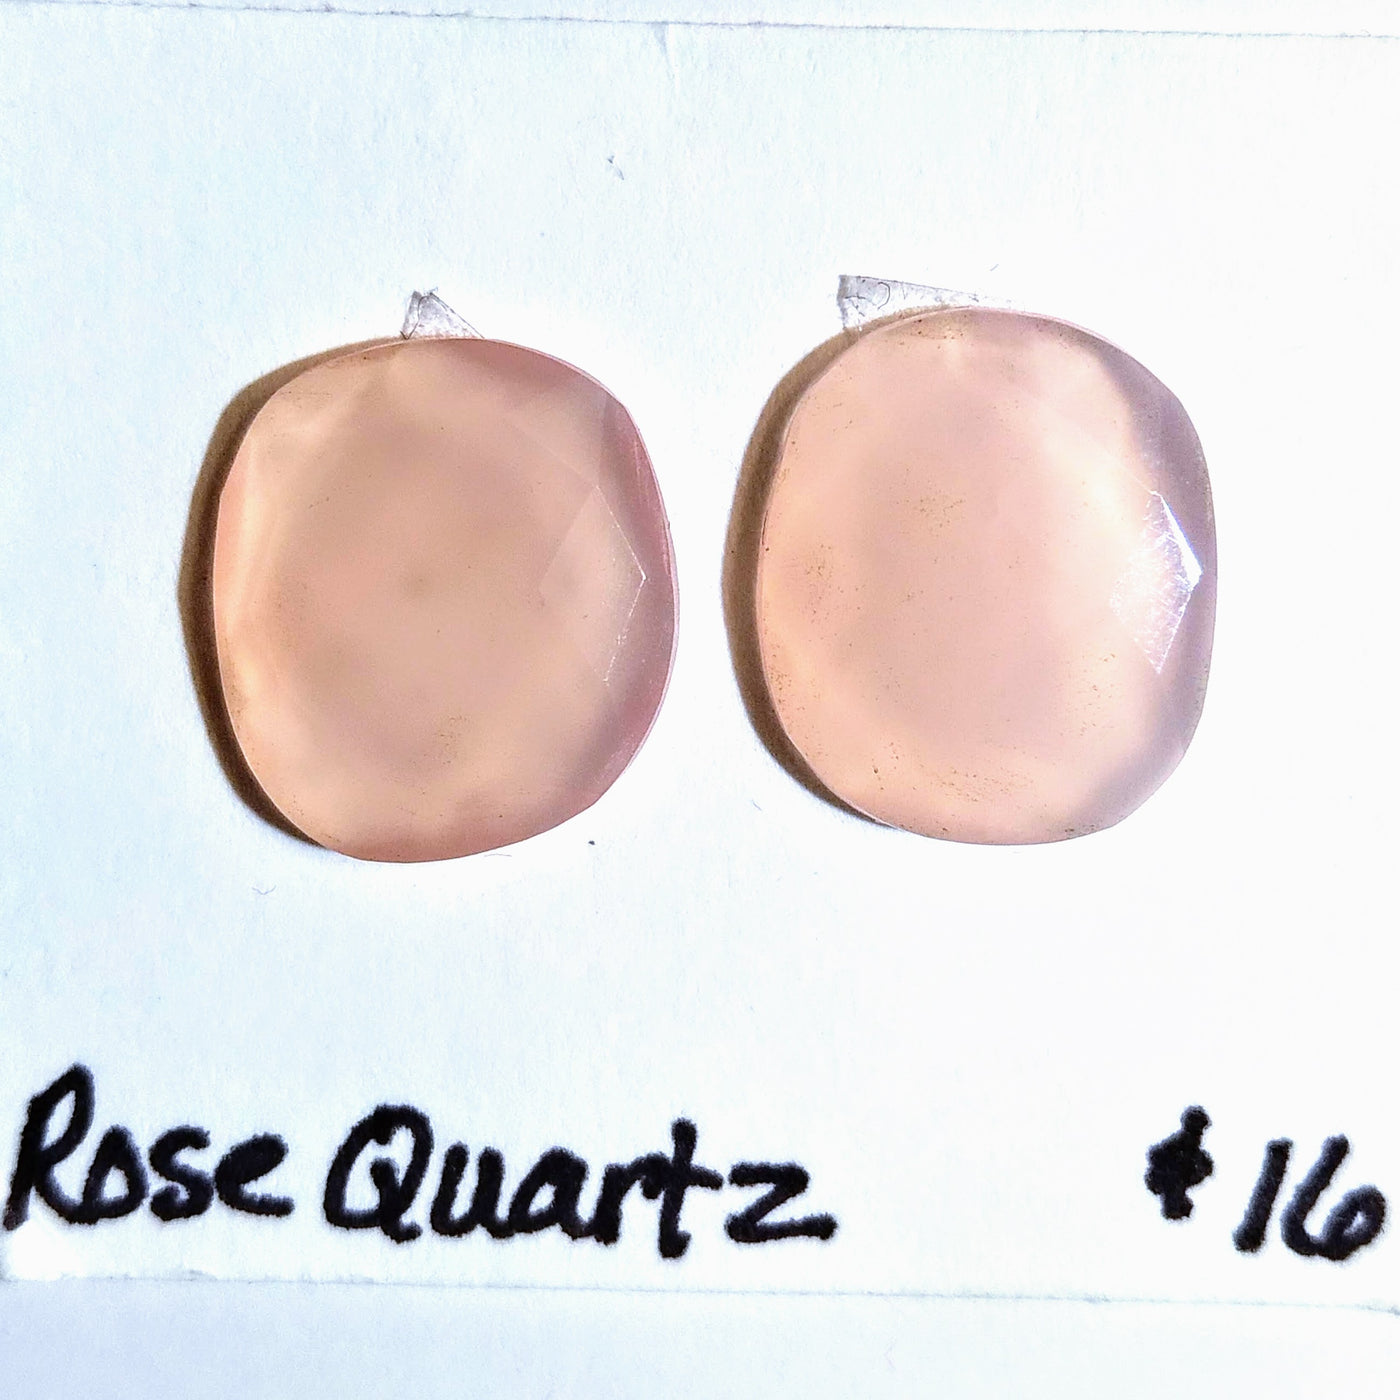 ROQ-1002 Rose Quartz Rose Cut Pair